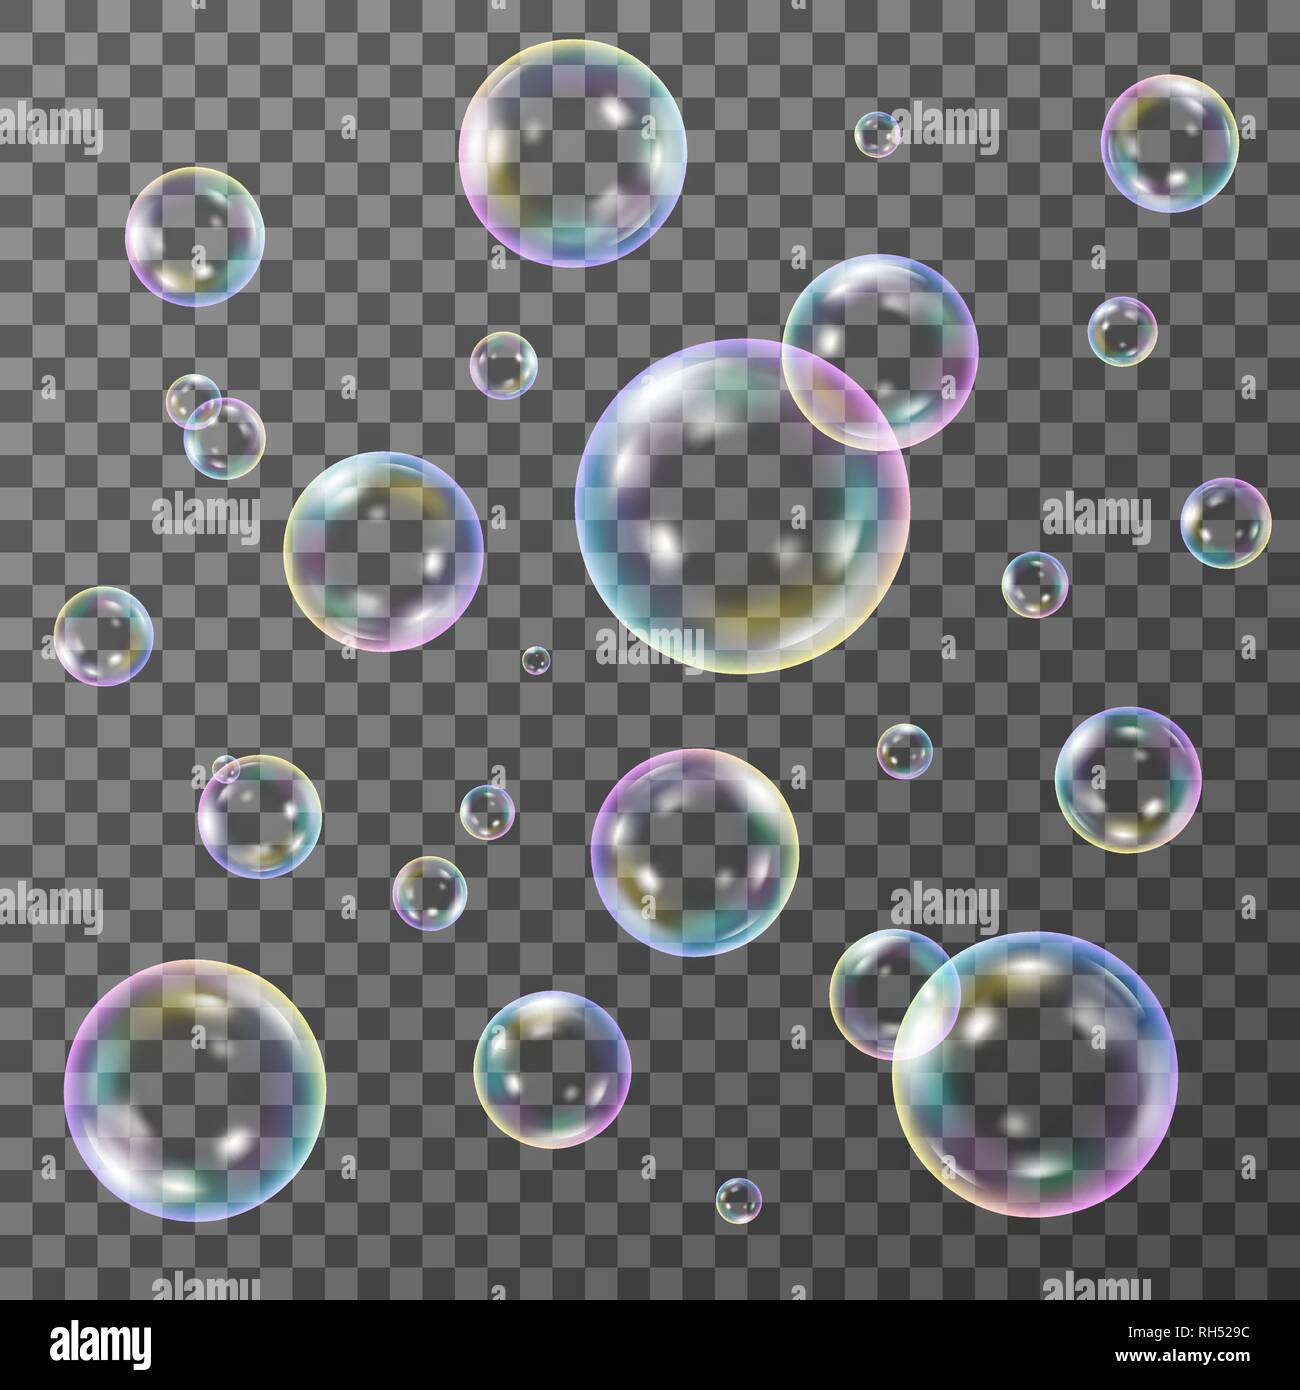 Seifenblasen Auf Transparentem Hintergrund Vektor Einrichten Stock Vektorgrafik Alamy